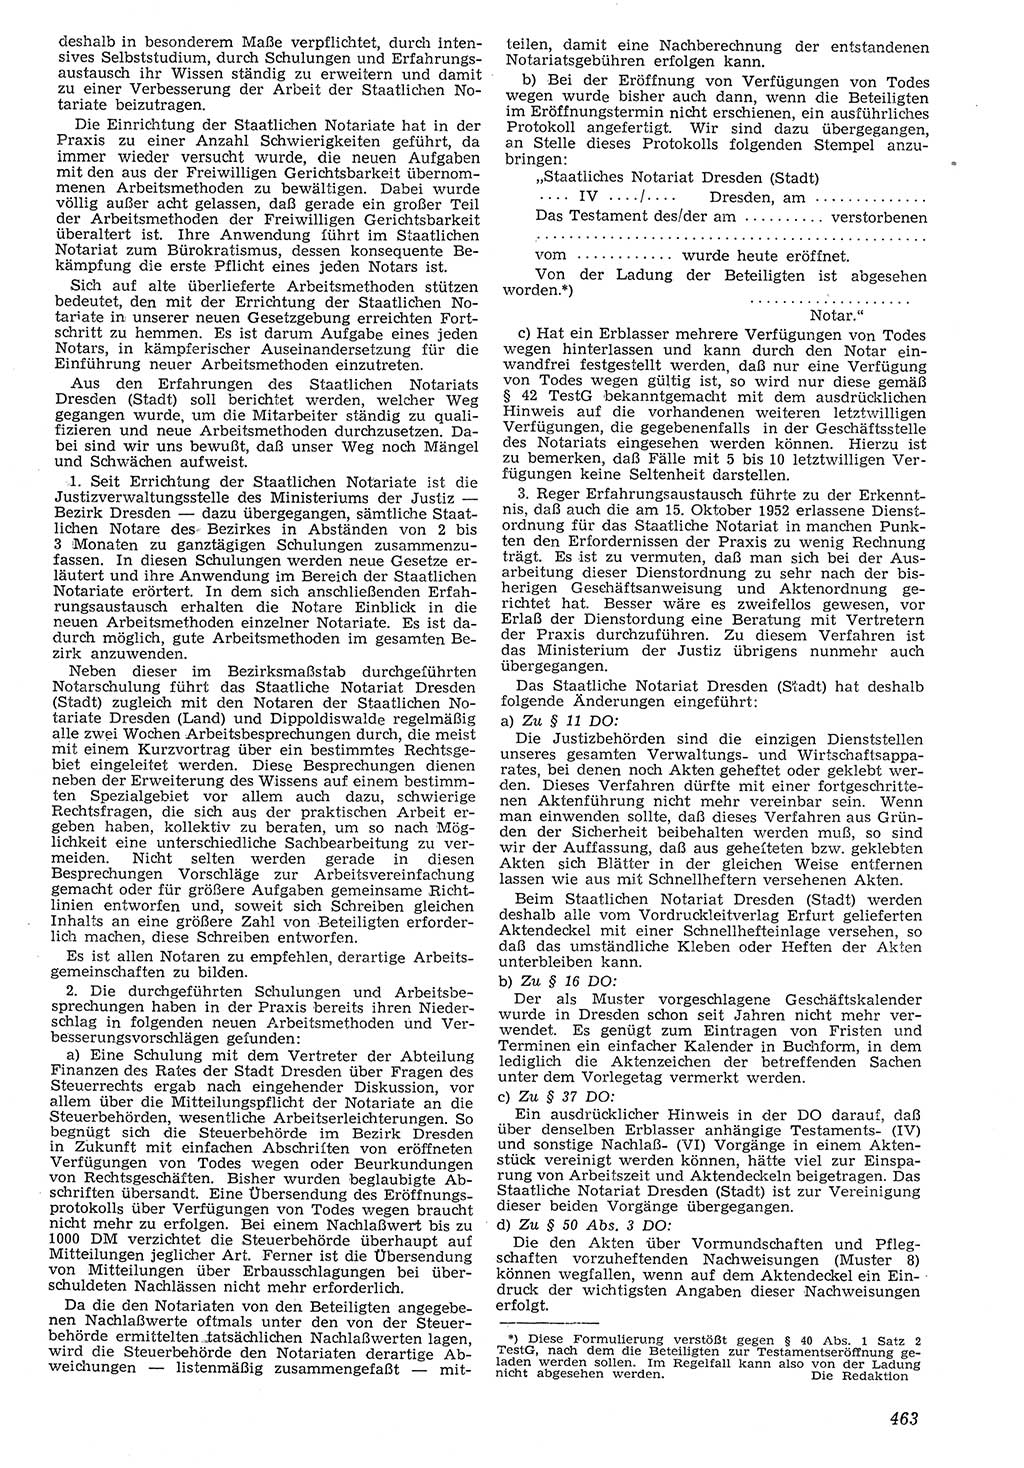 Neue Justiz (NJ), Zeitschrift für Recht und Rechtswissenschaft [Deutsche Demokratische Republik (DDR)], 7. Jahrgang 1953, Seite 463 (NJ DDR 1953, S. 463)